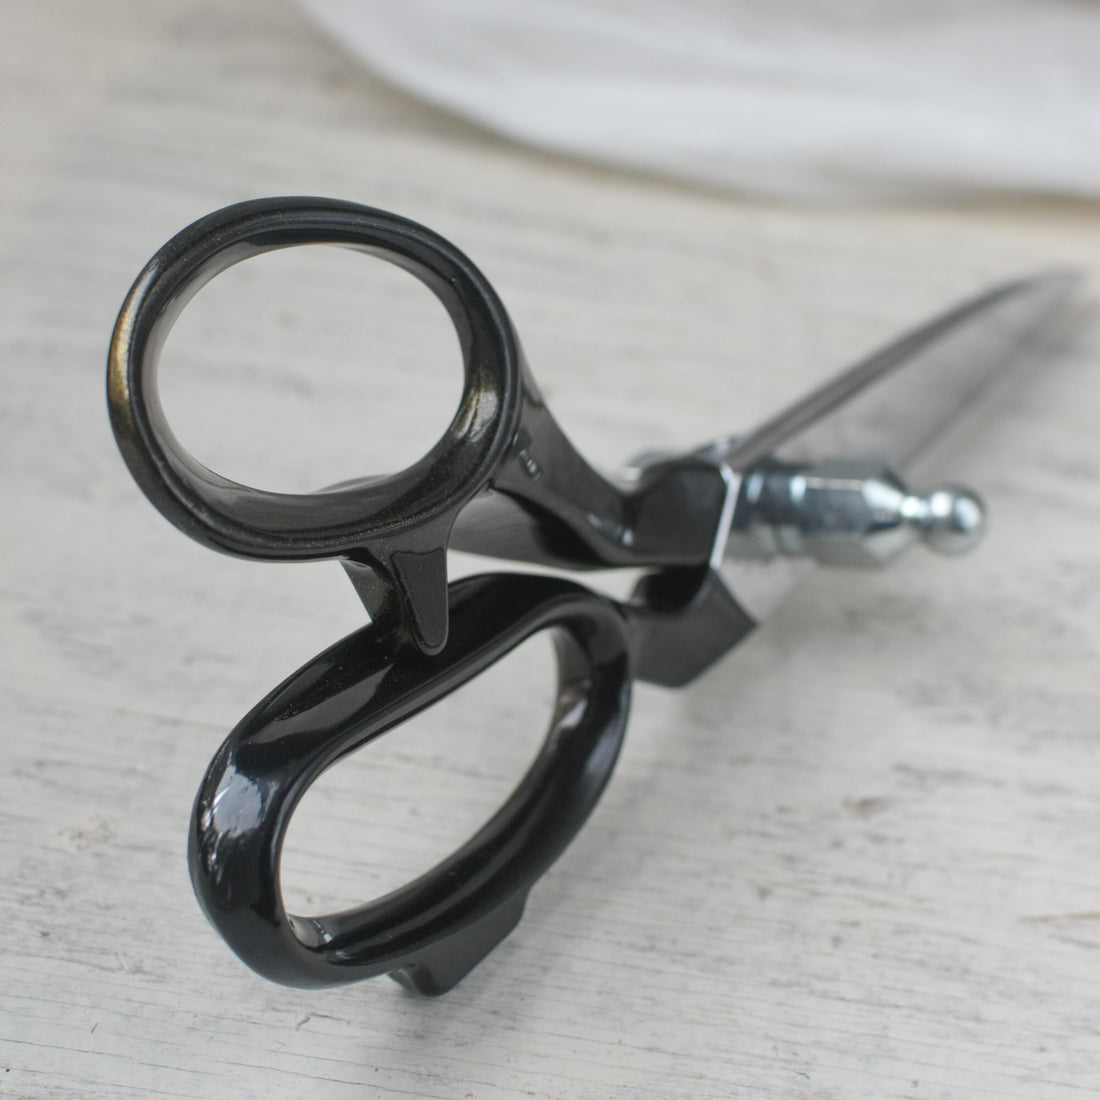 Professional Sewing Scissors Tailor's Scissors Fabric Needlework